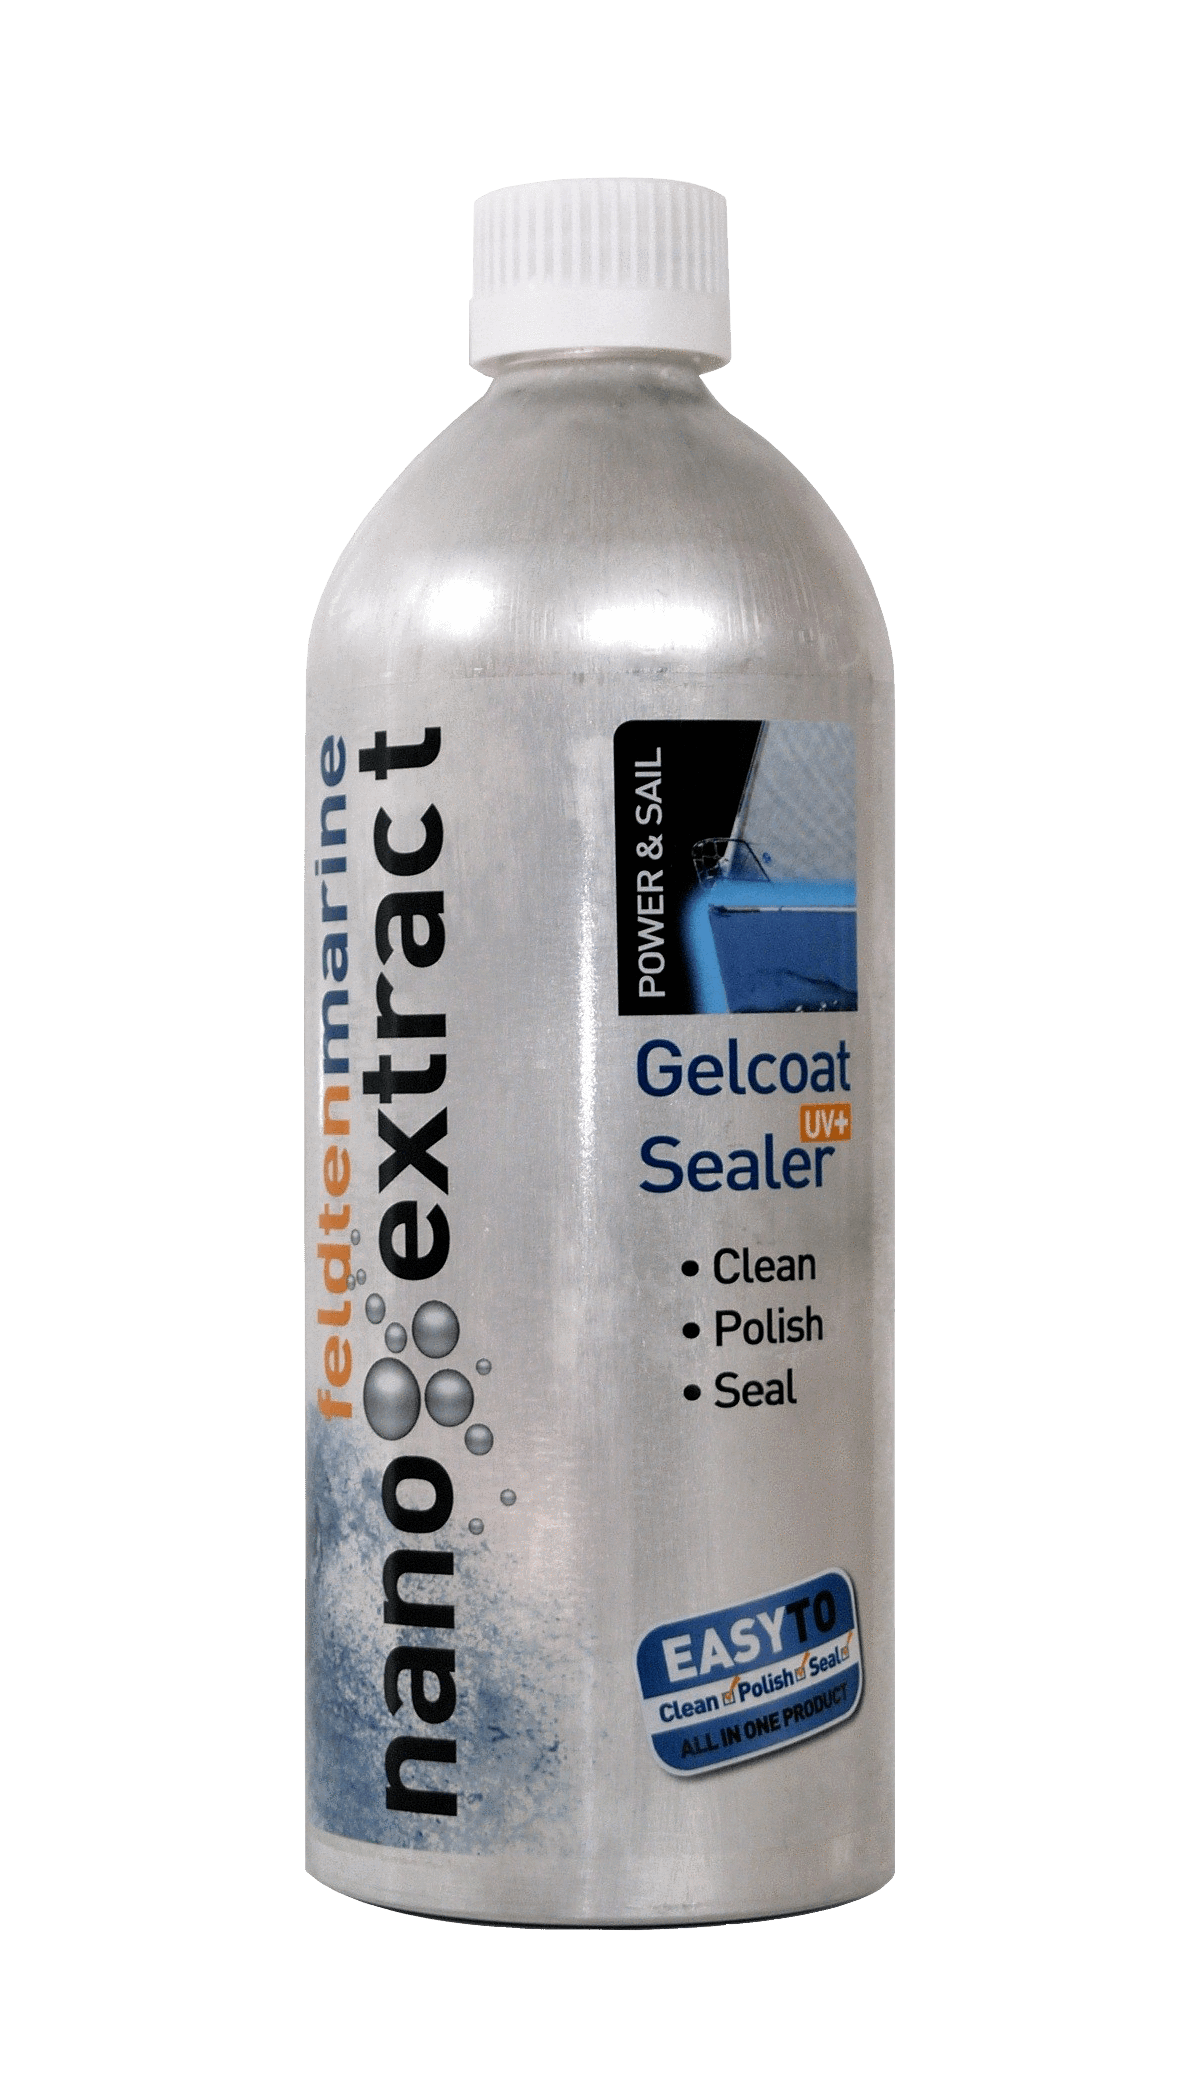 Gelcoat Sealer Marine Gelcoat Sealer Feldten Marine Feldten Marine Nano Extracts - Feldten Marine Nano Extracts